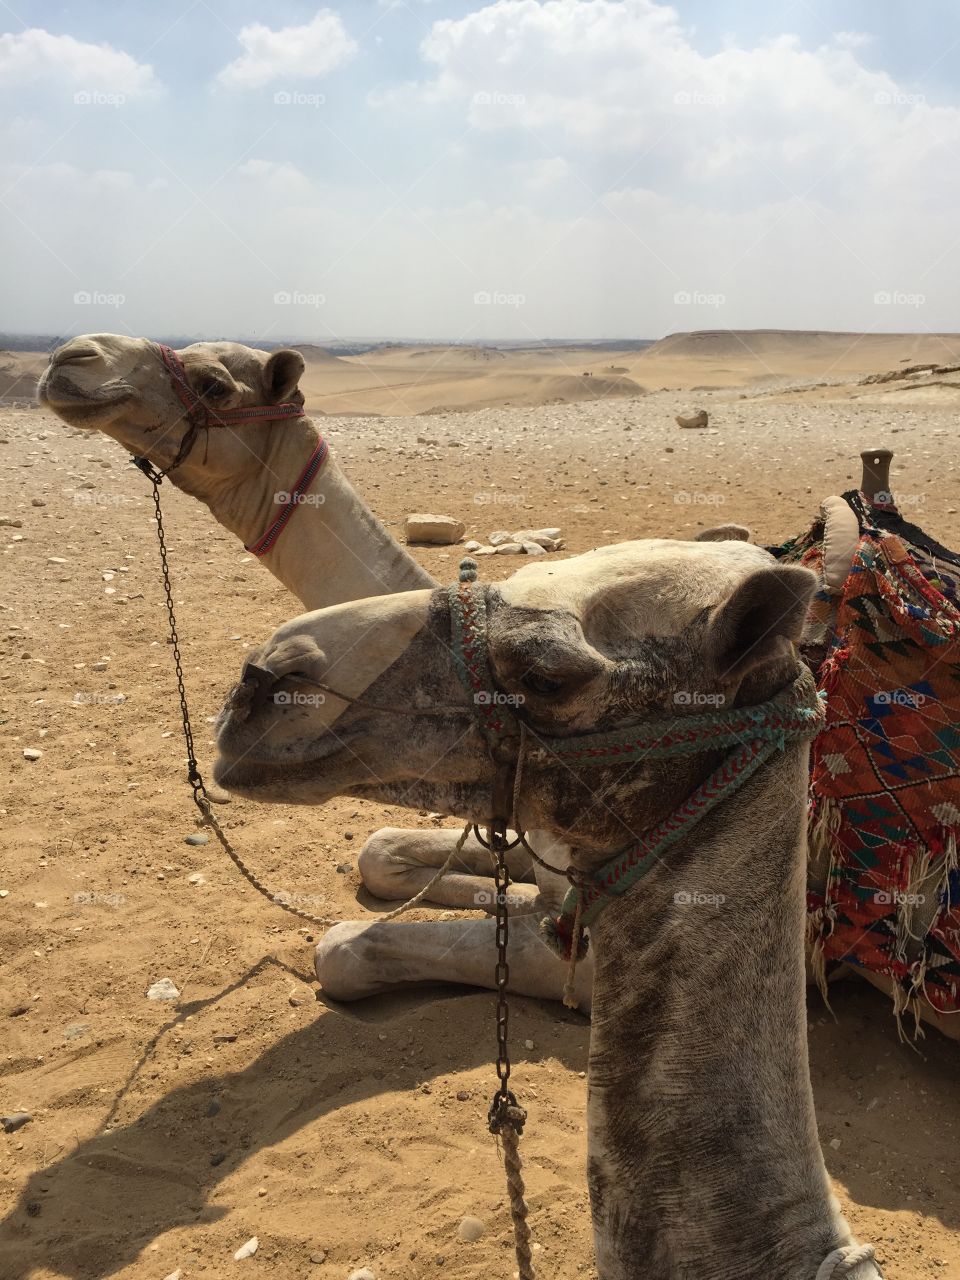 Two camel sitting on desert